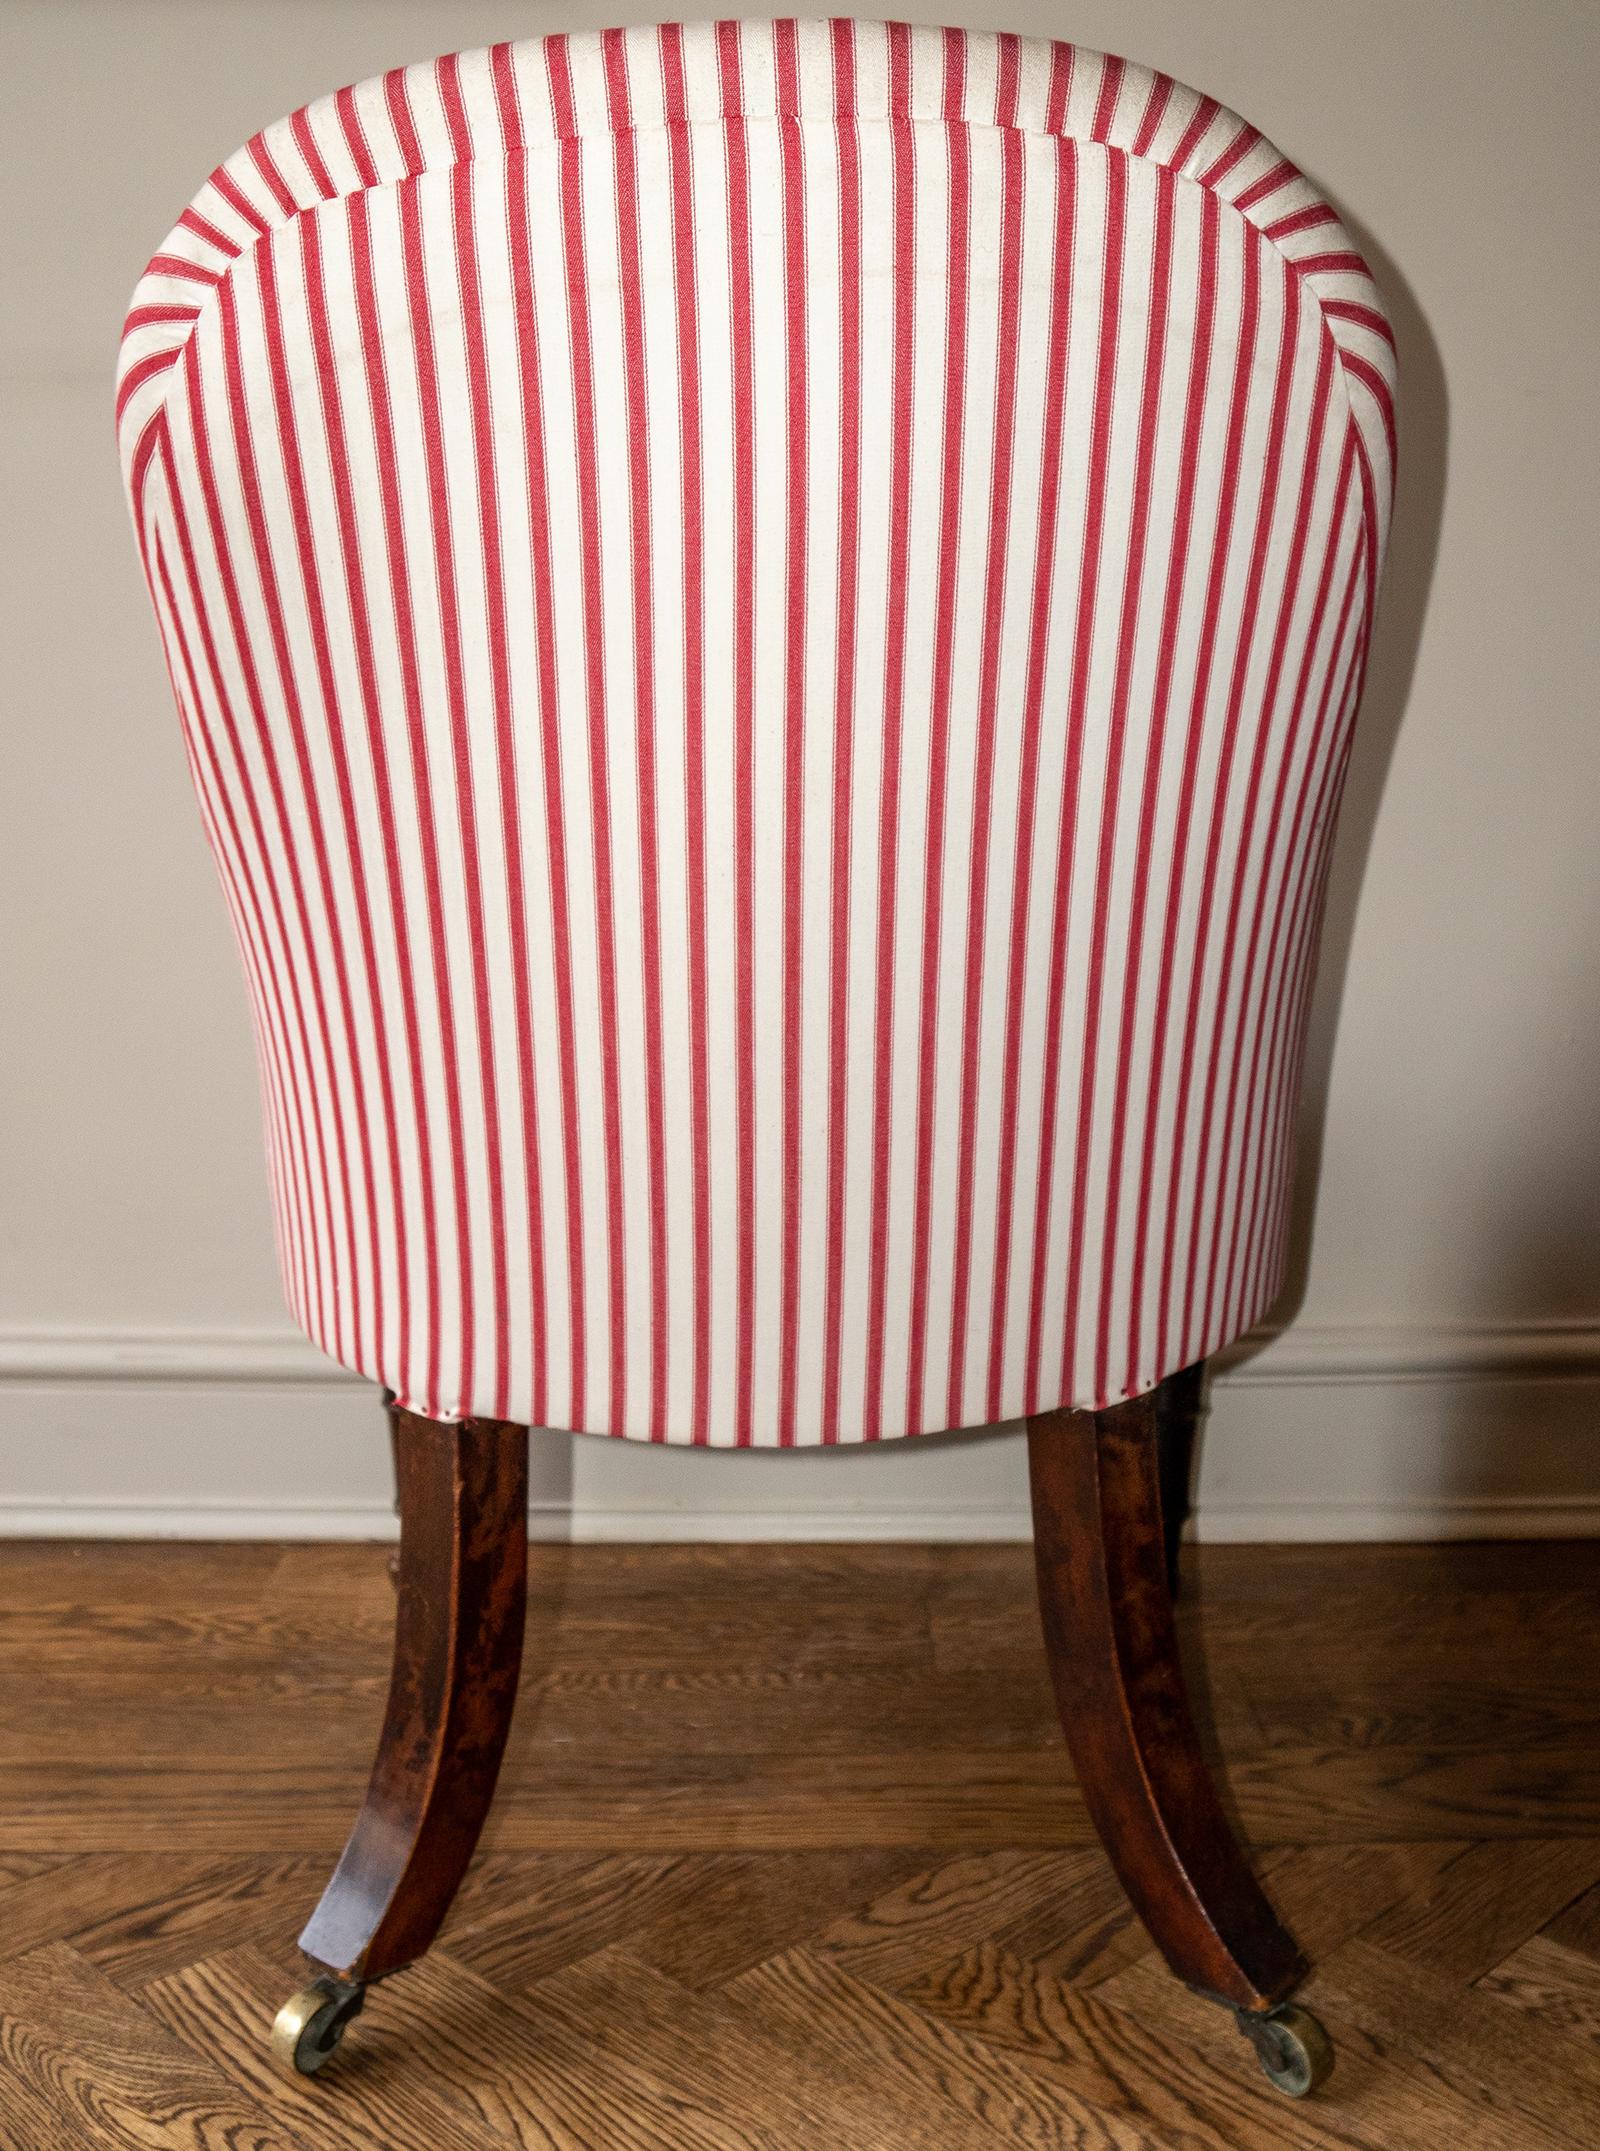 Regency-Sessel ohne Armlehne aus Mahagoni mit roten Streifen, um 1810 (19. Jahrhundert)